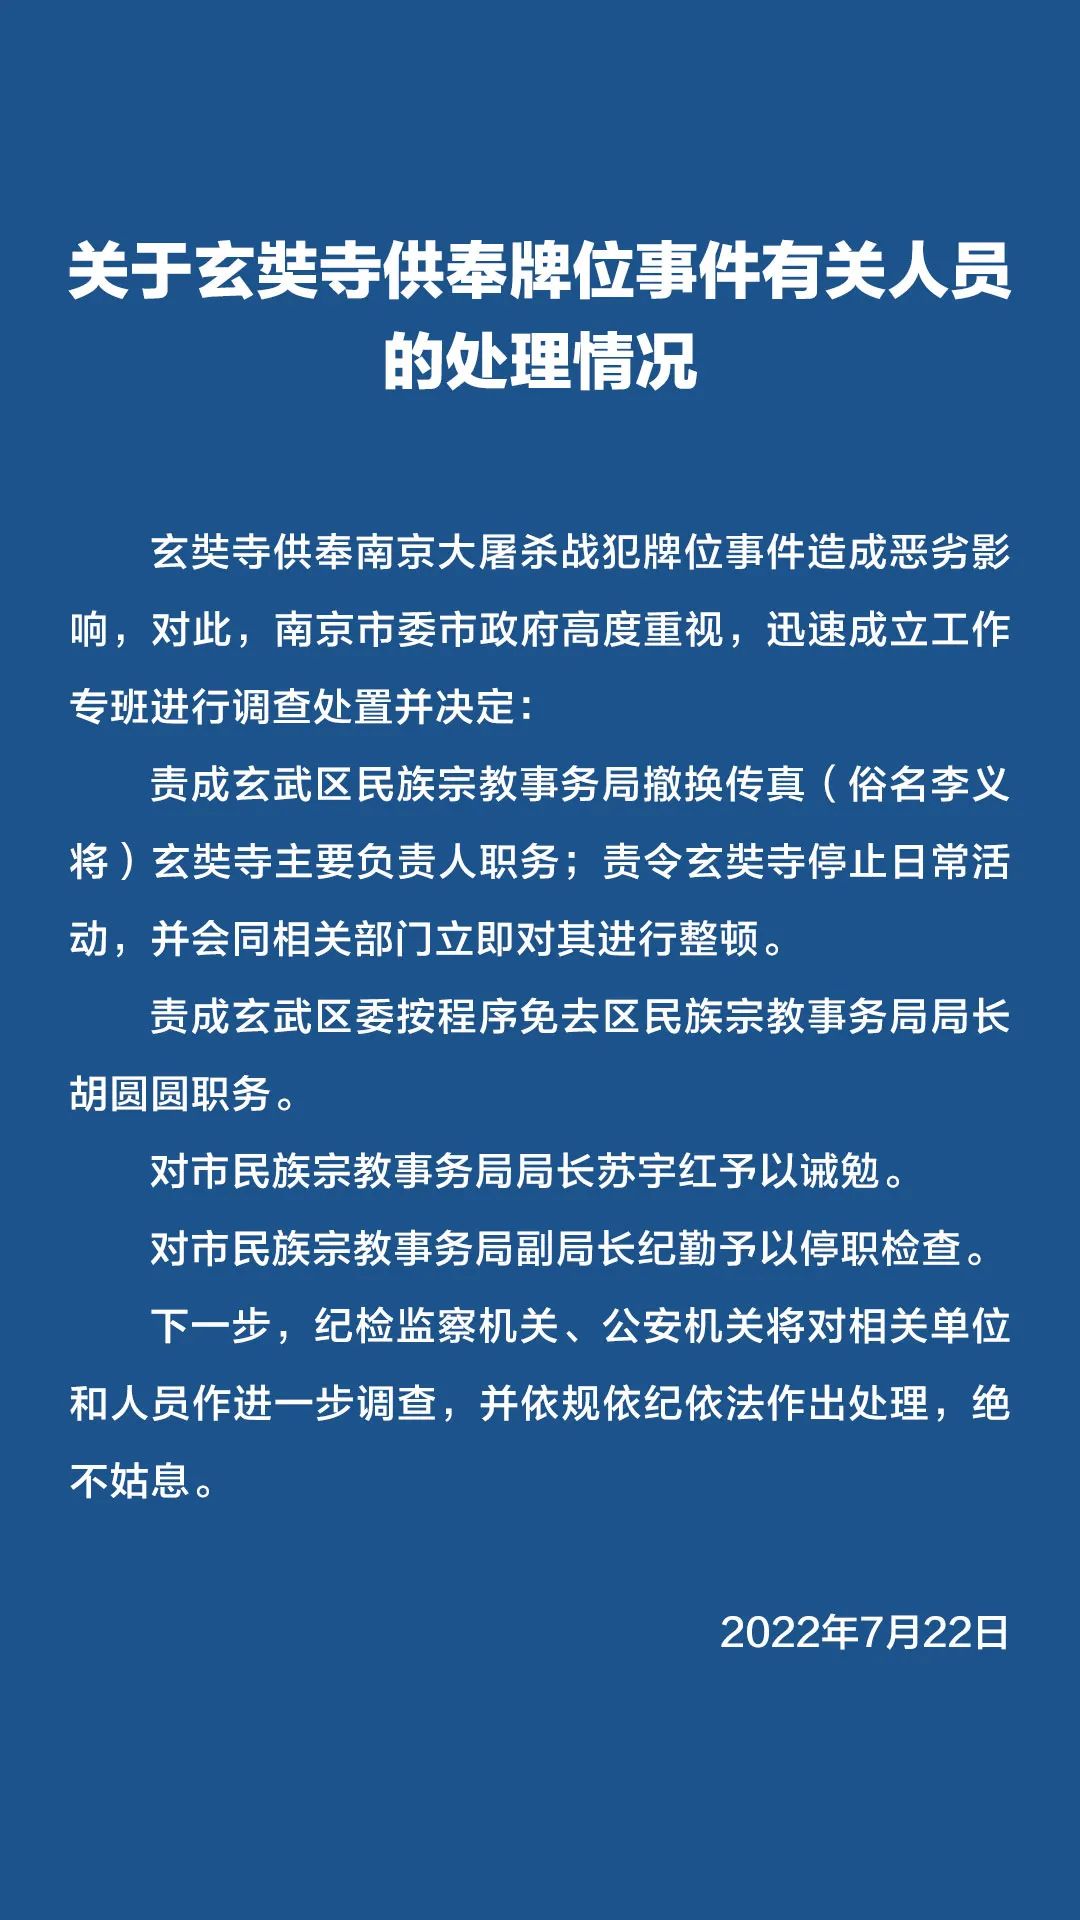 南京玄奘寺事件处理情况公布：寺庙主要负责人被撤换